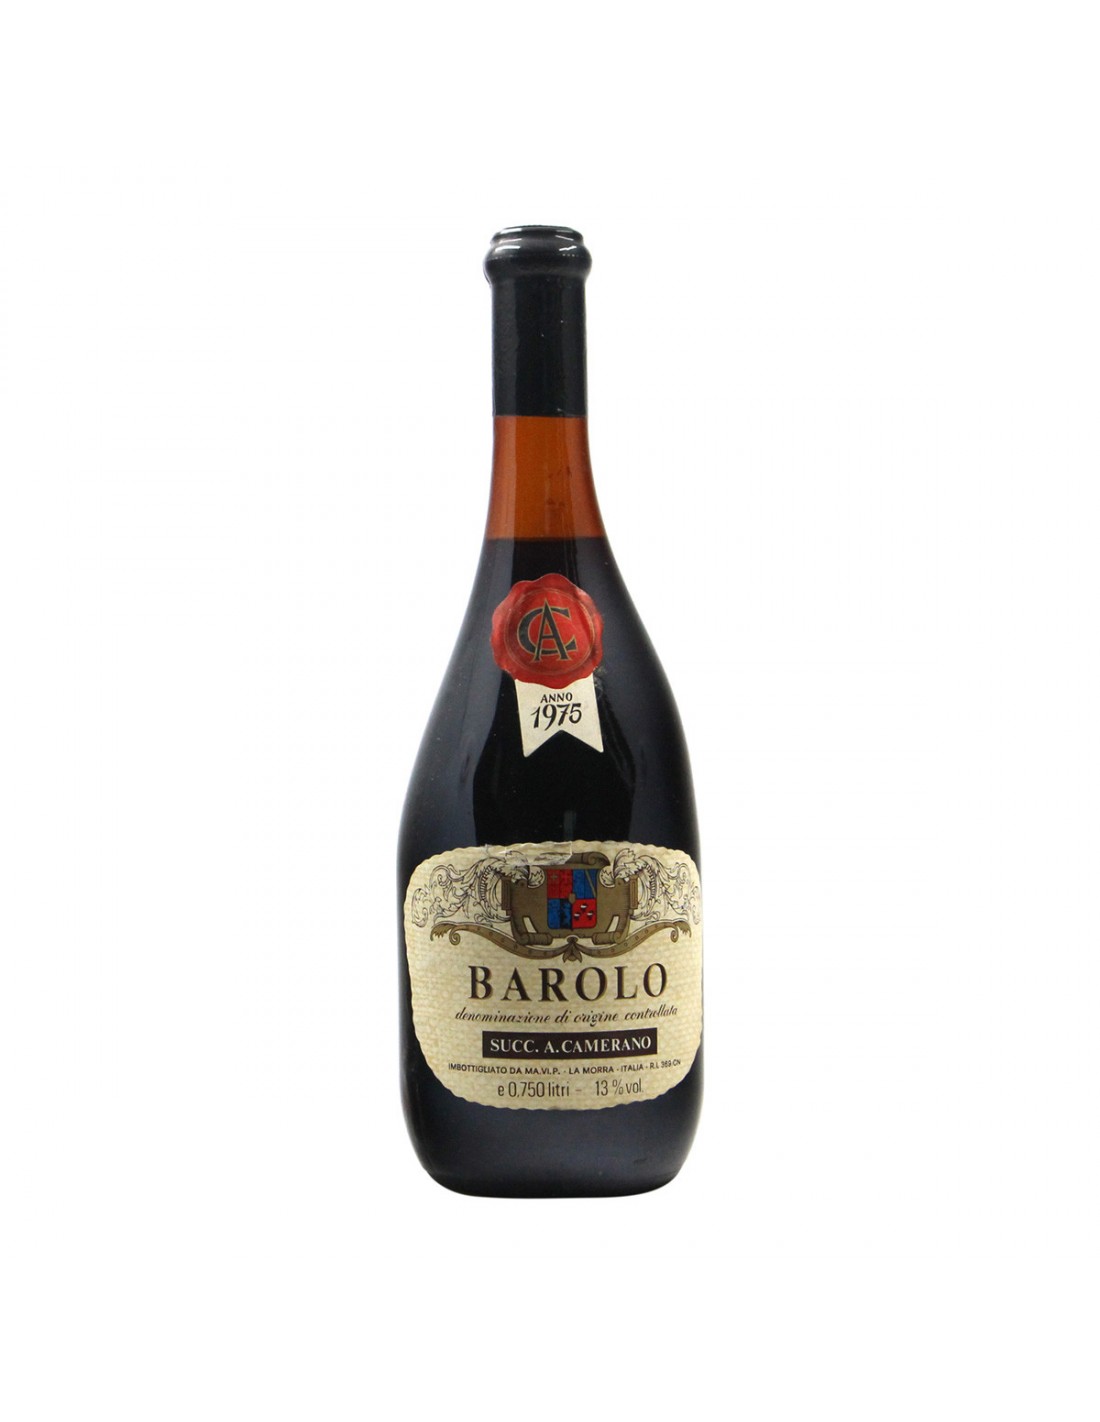 BAROLO 1975 CAMERANO Grandi Bottiglie